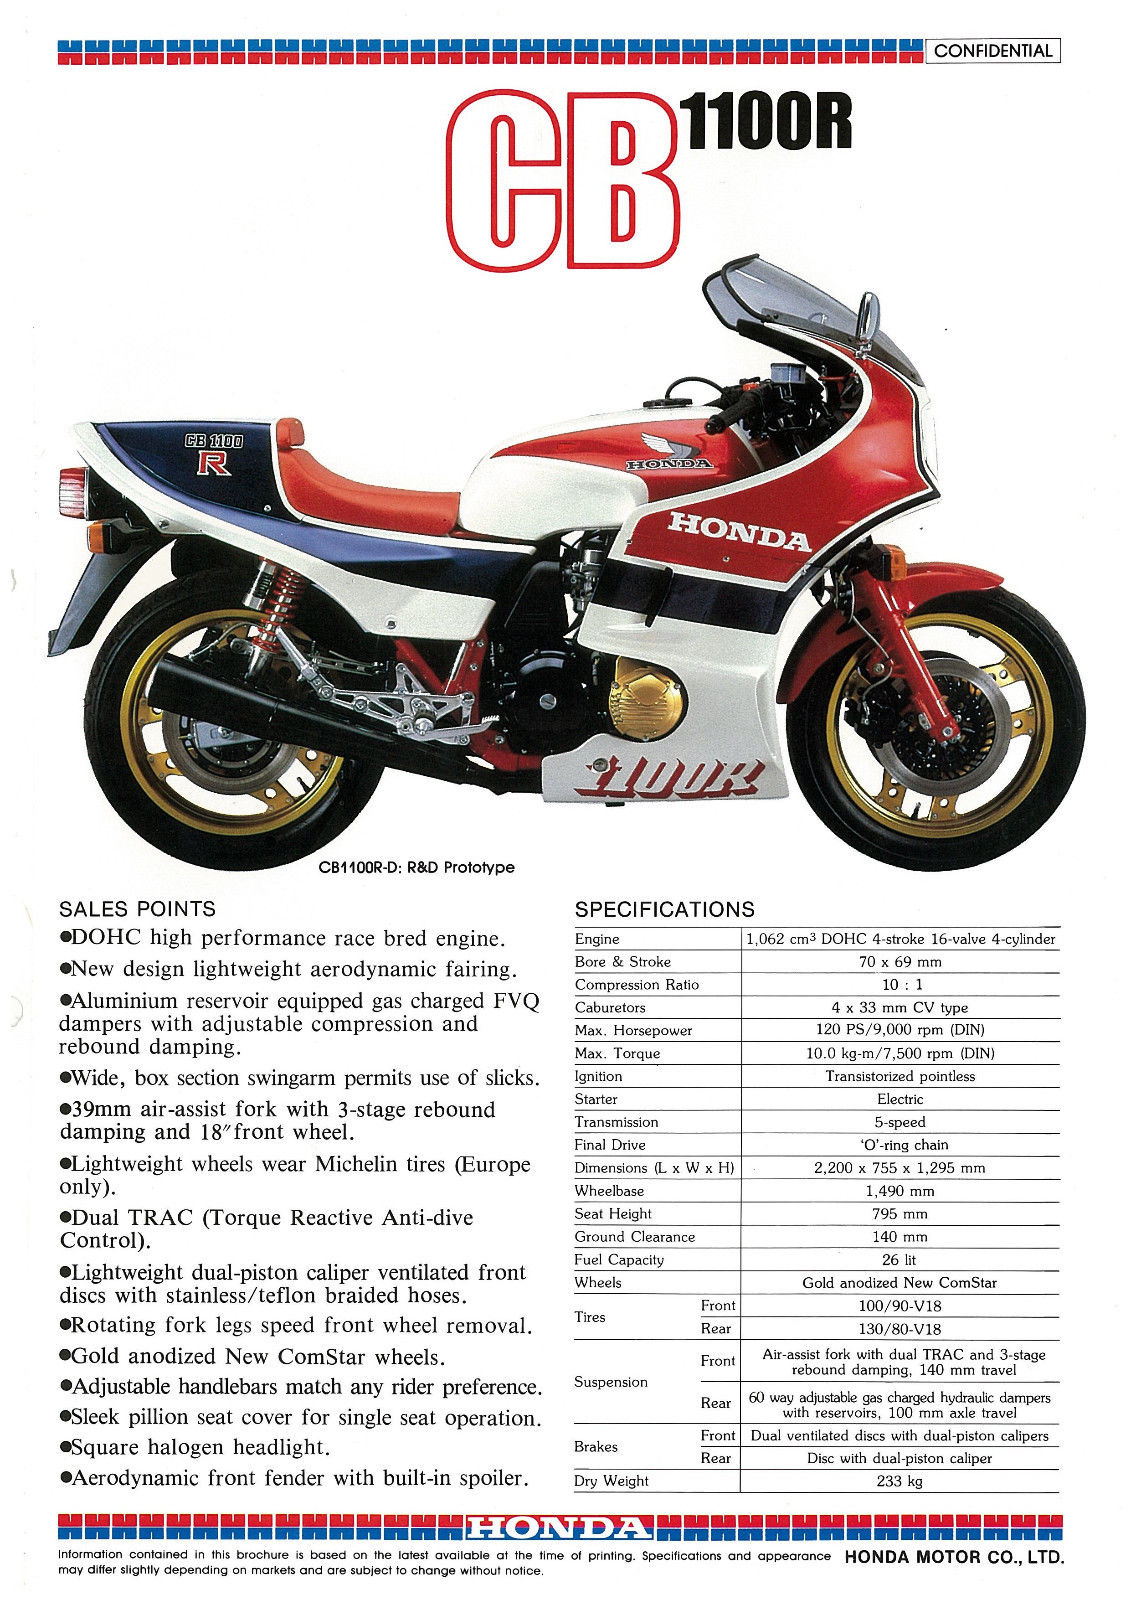 Honda CB1100RD spec sheet